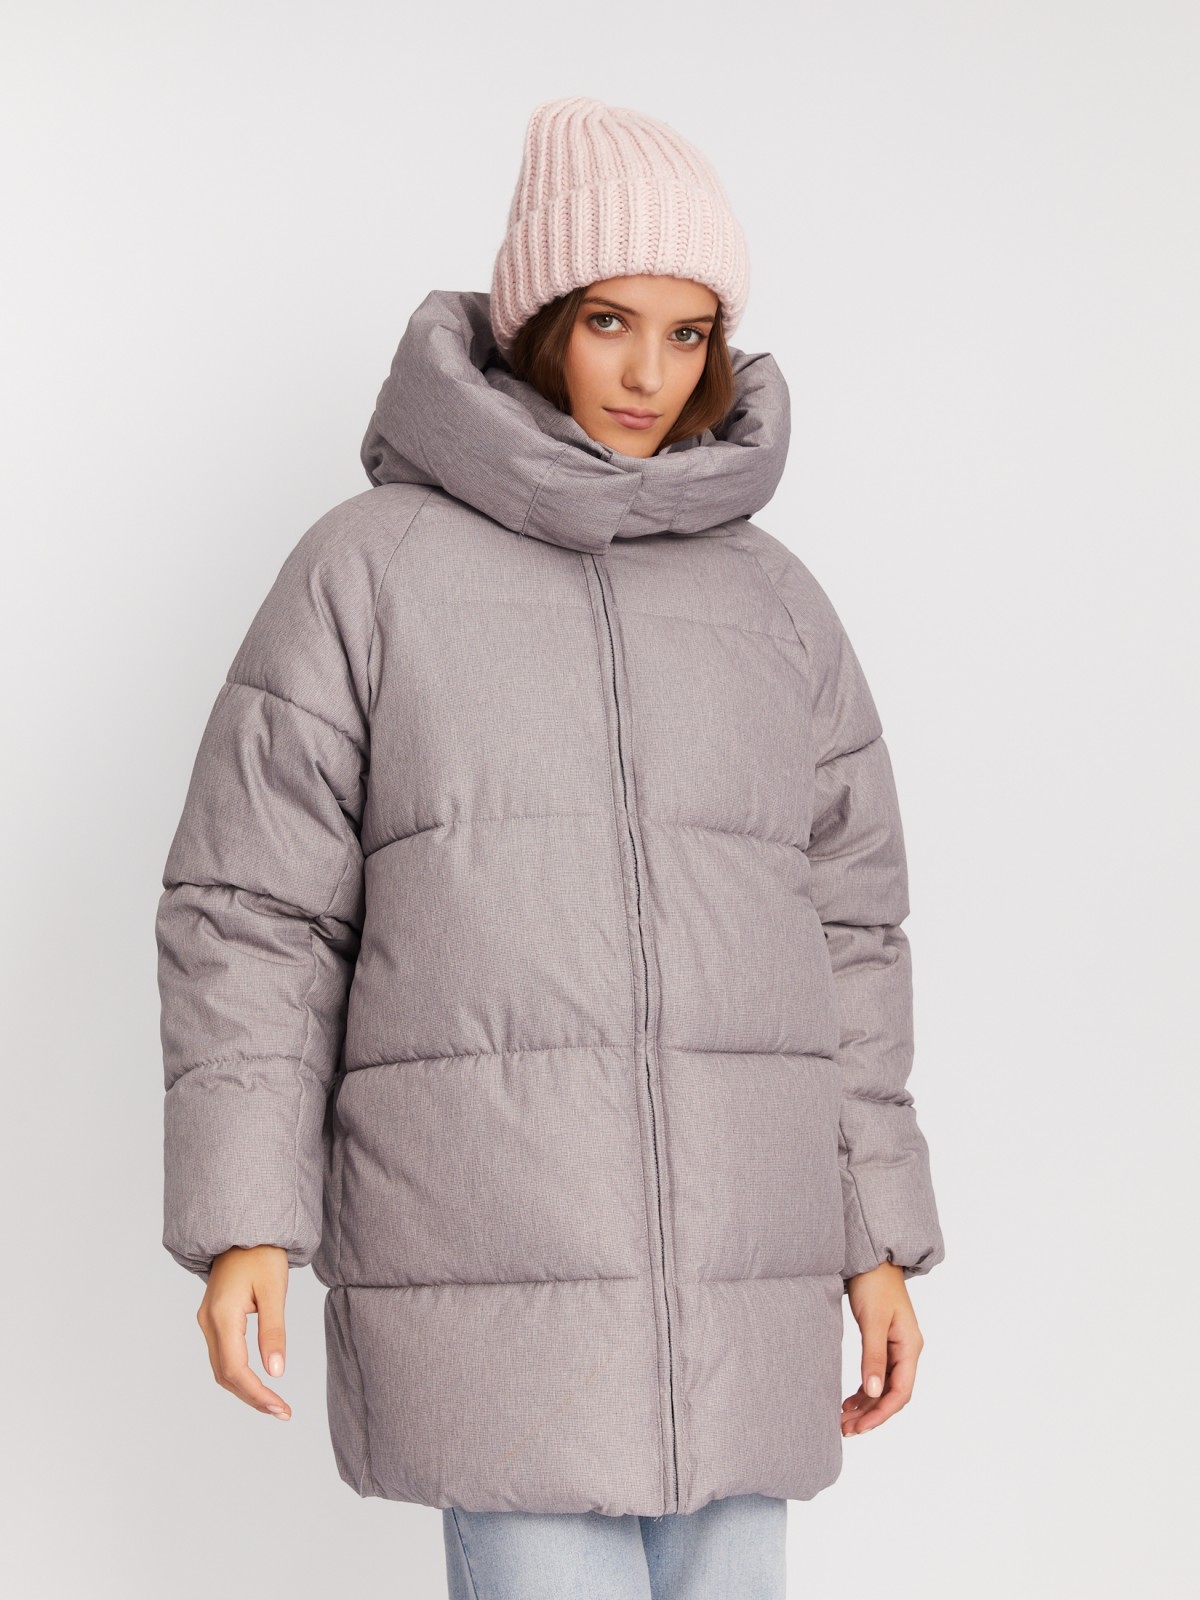 Тёплая куртка-пальто оверсайз силуэта с капюшоном zolla 02342520L124, цвет серый, размер XS - фото 3